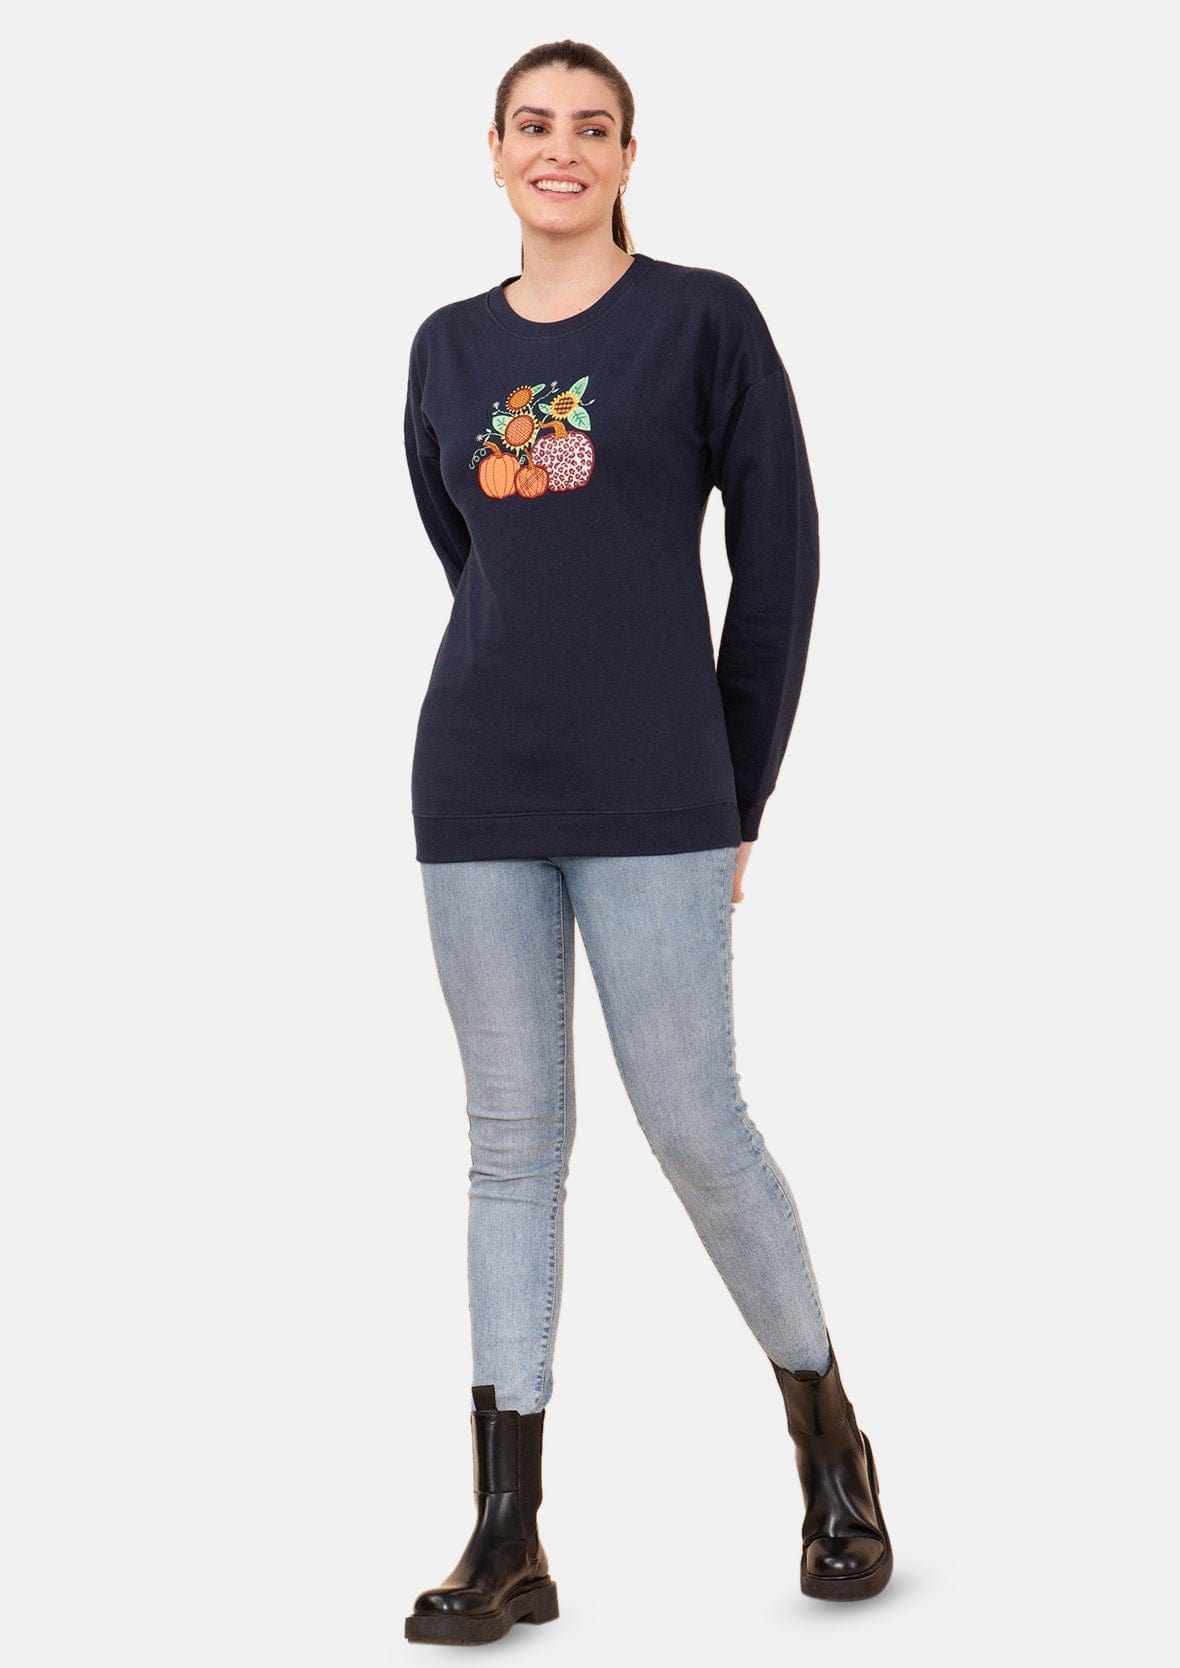 Pumpkin Applique Holiday Sweatshirt